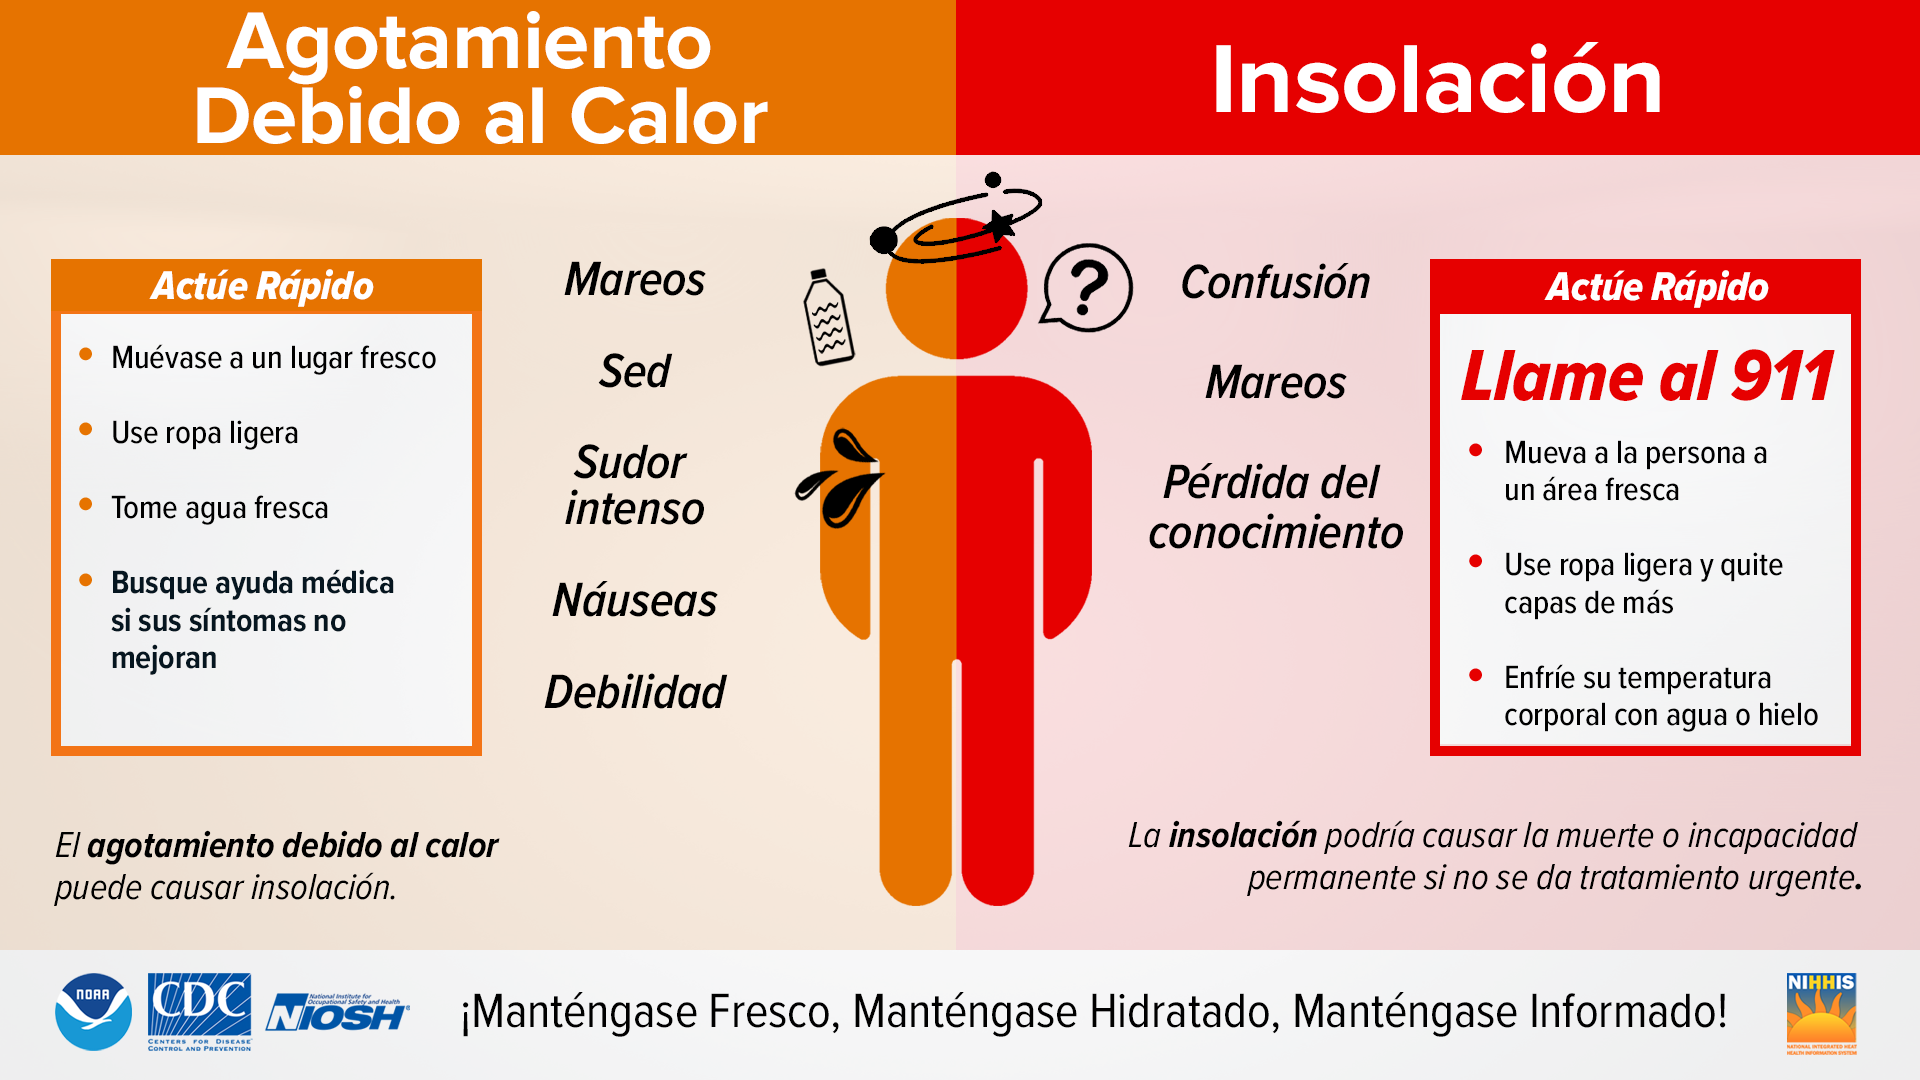 Heat Safety in Spanish